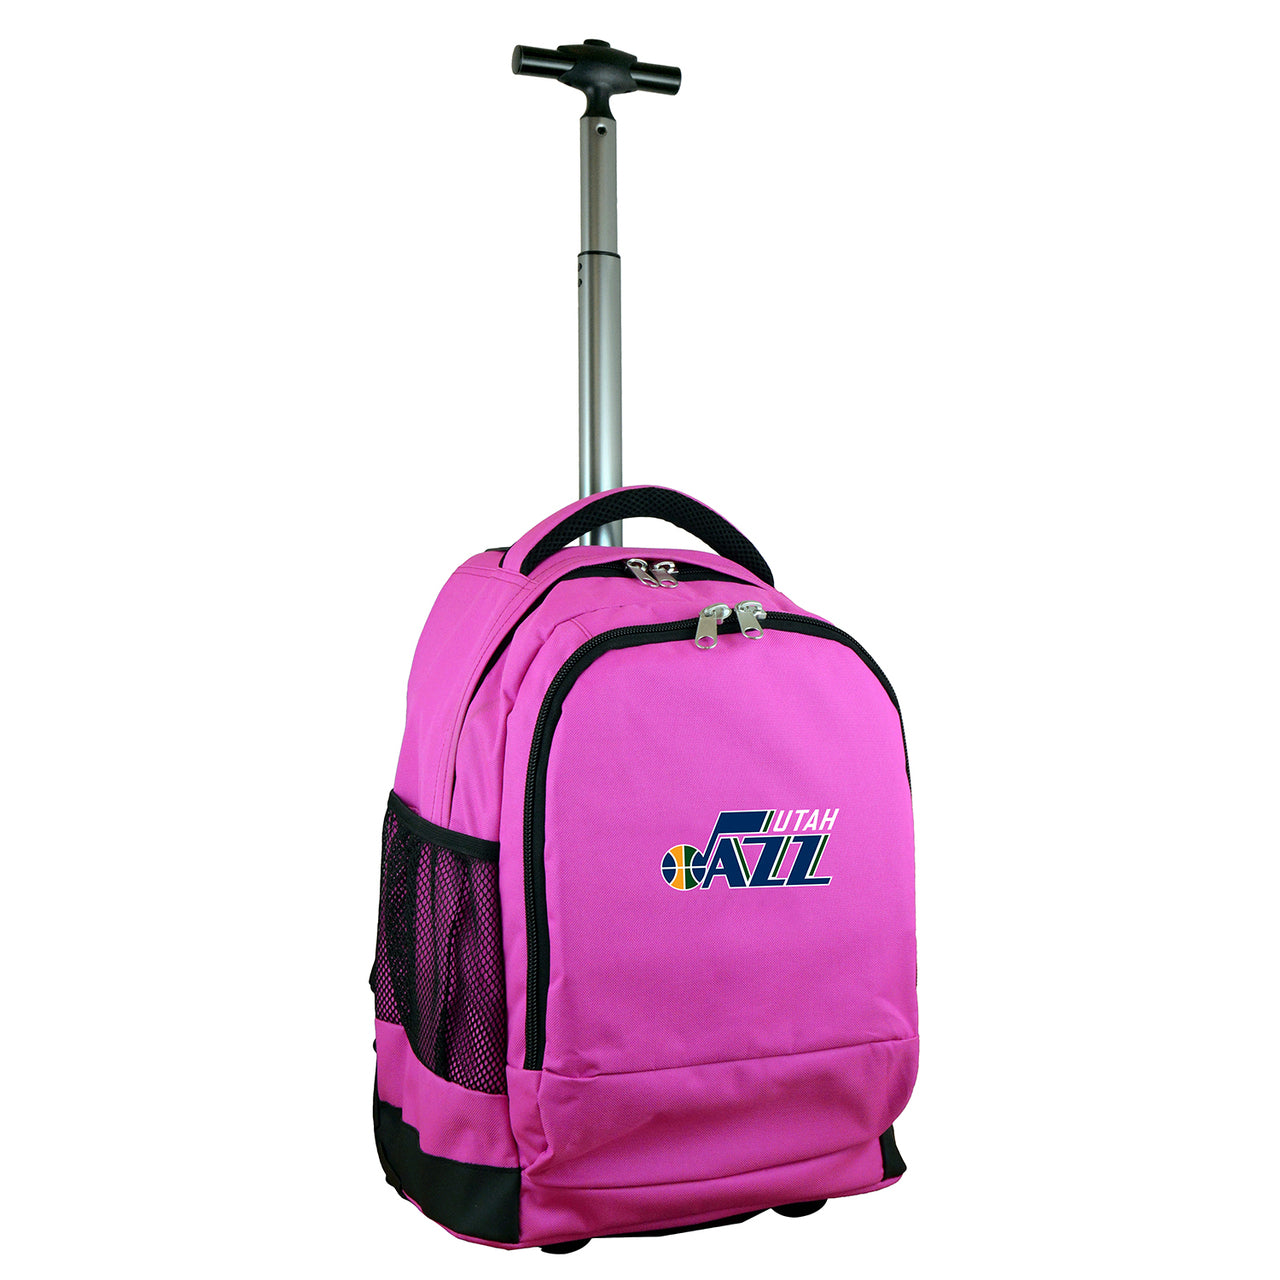 Utah Jazz Premium Wheeled Backpack in Pink